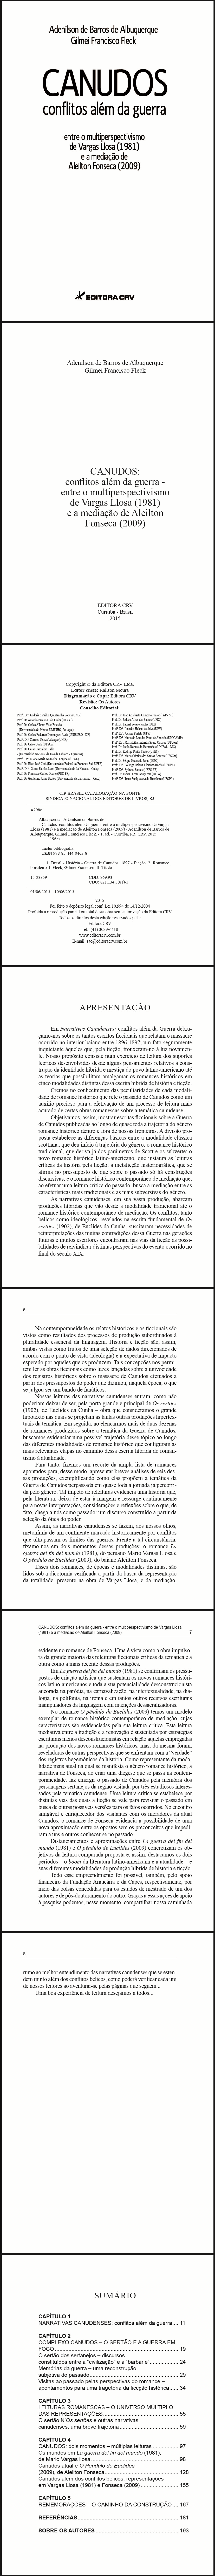 CANUDOS:<br>conflitos além da guerra - entre o multiperspectivismo de Vargas Llosa (1981) e a mediação de Aleilton Fonseca (2009)